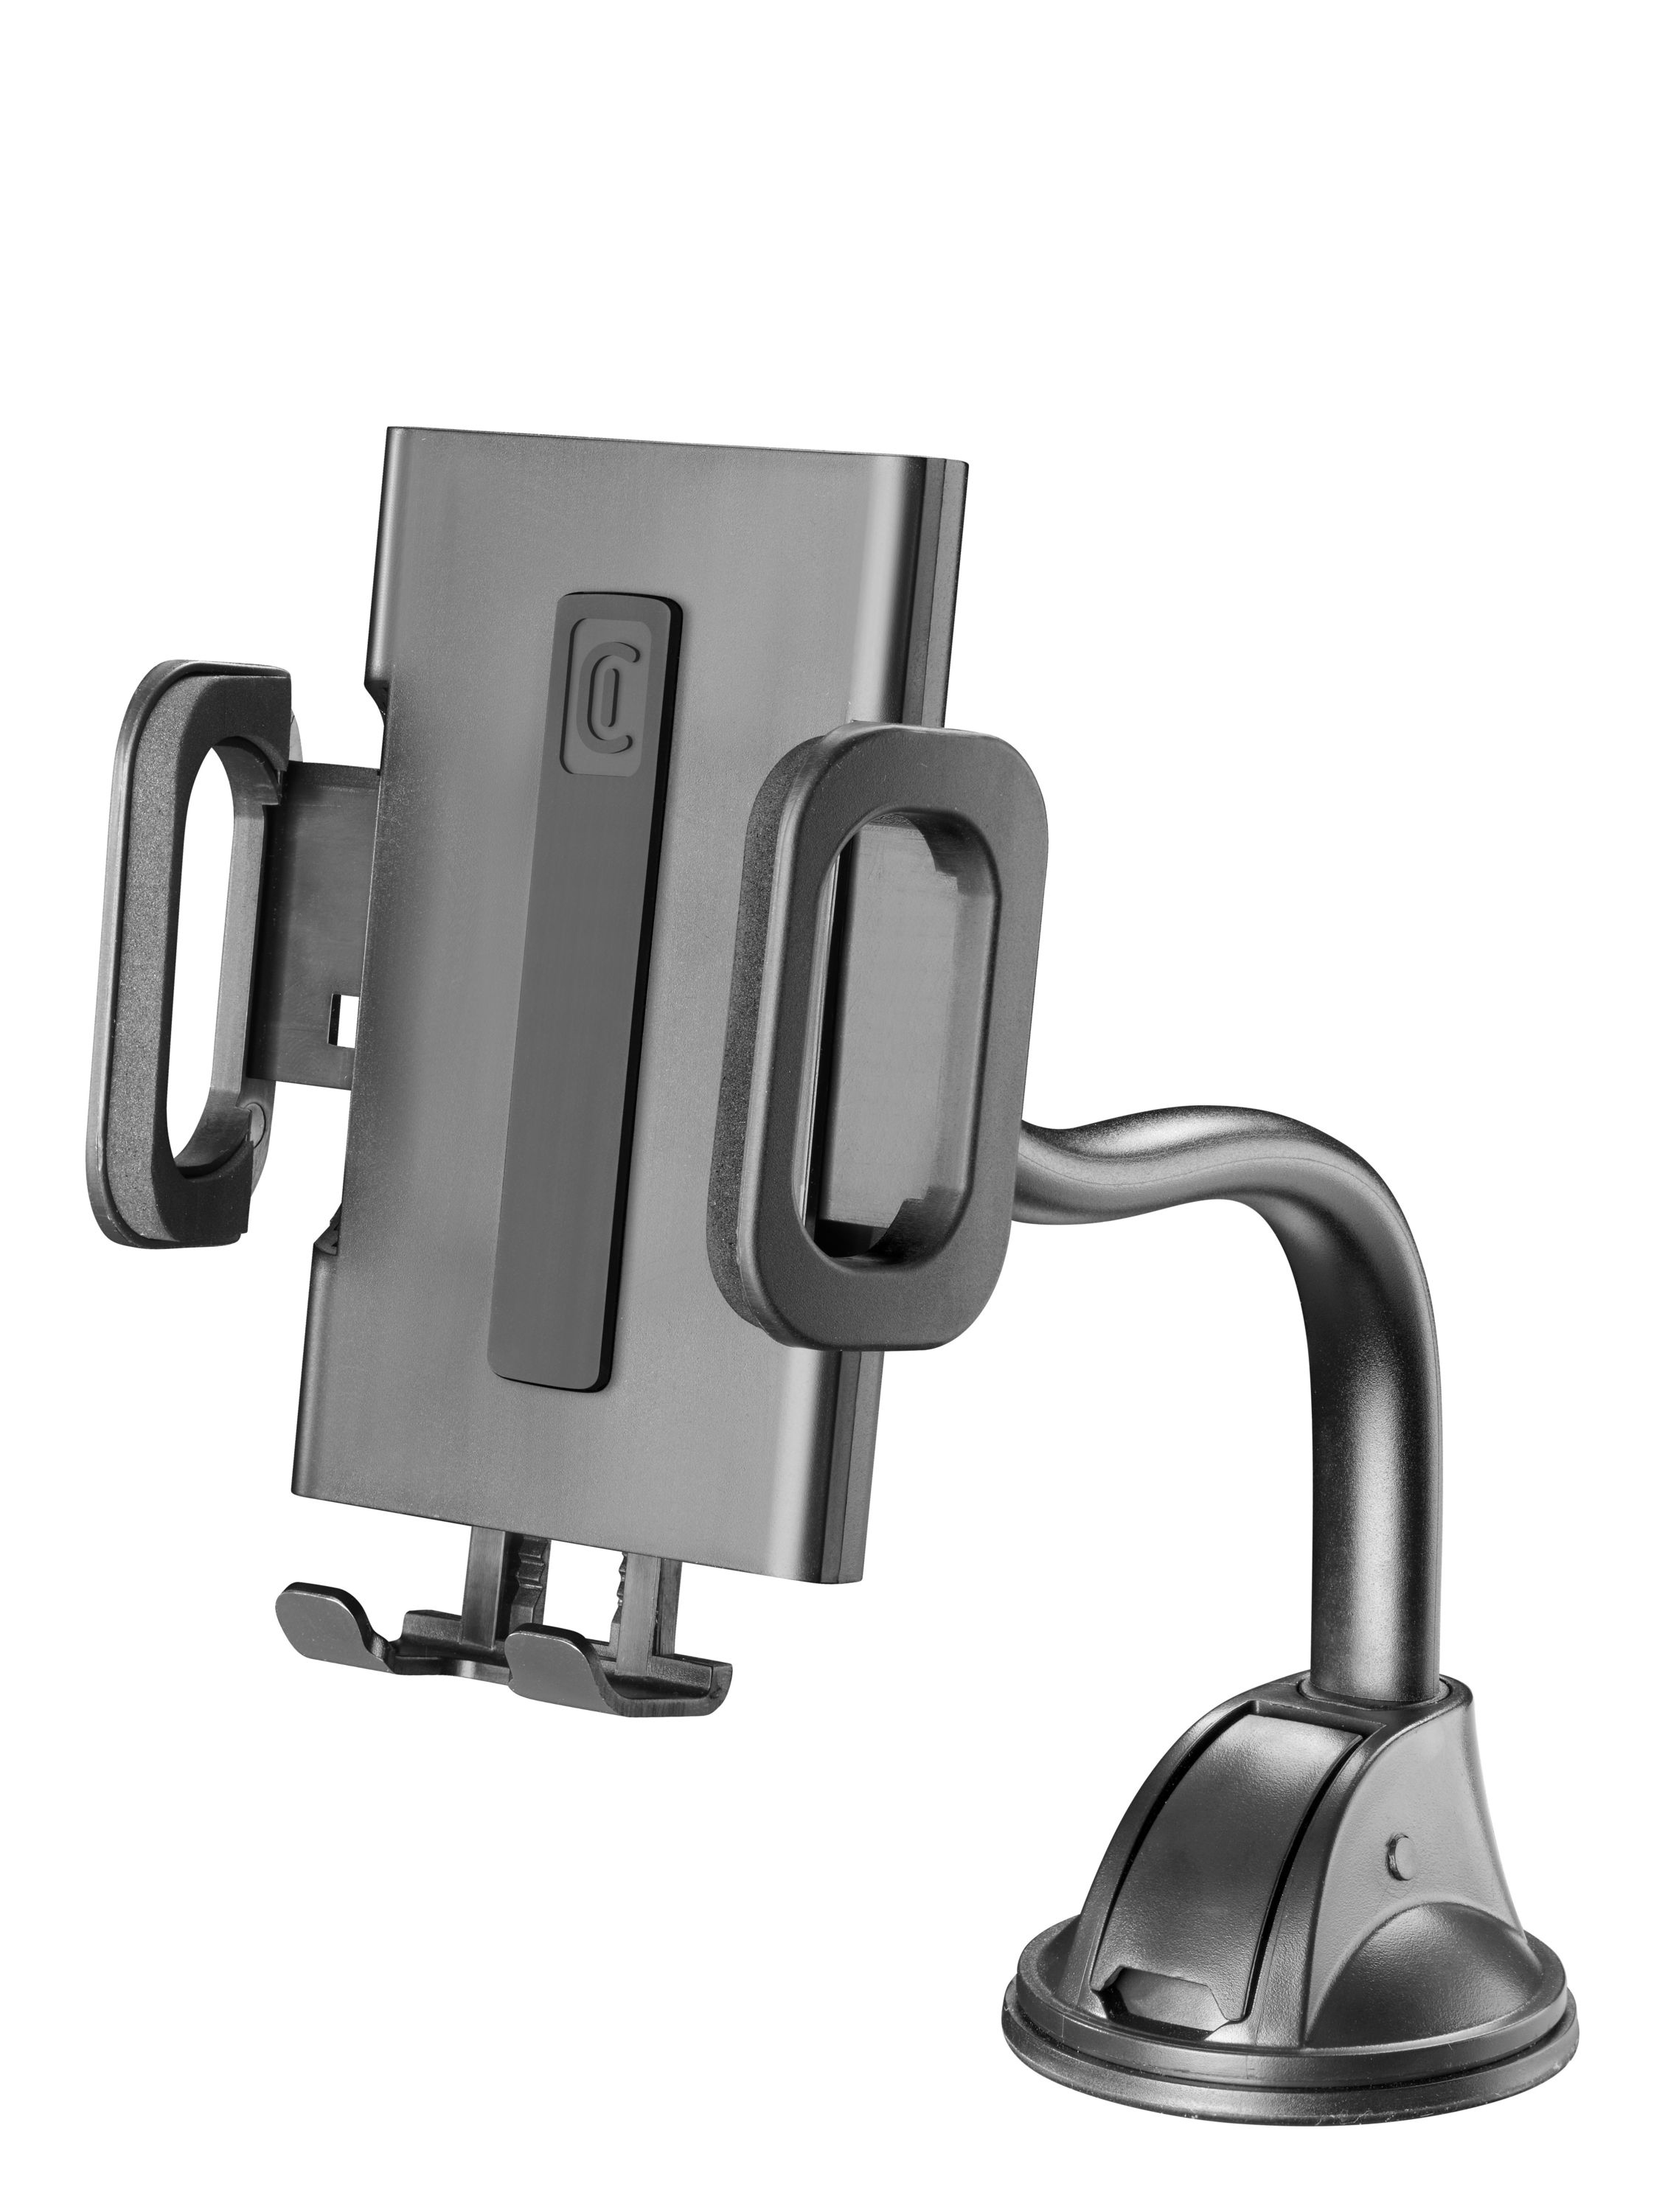 Cellularline Hug Flexi - Universal Supporto smartphone da auto con fissaggio a ventosa Nero